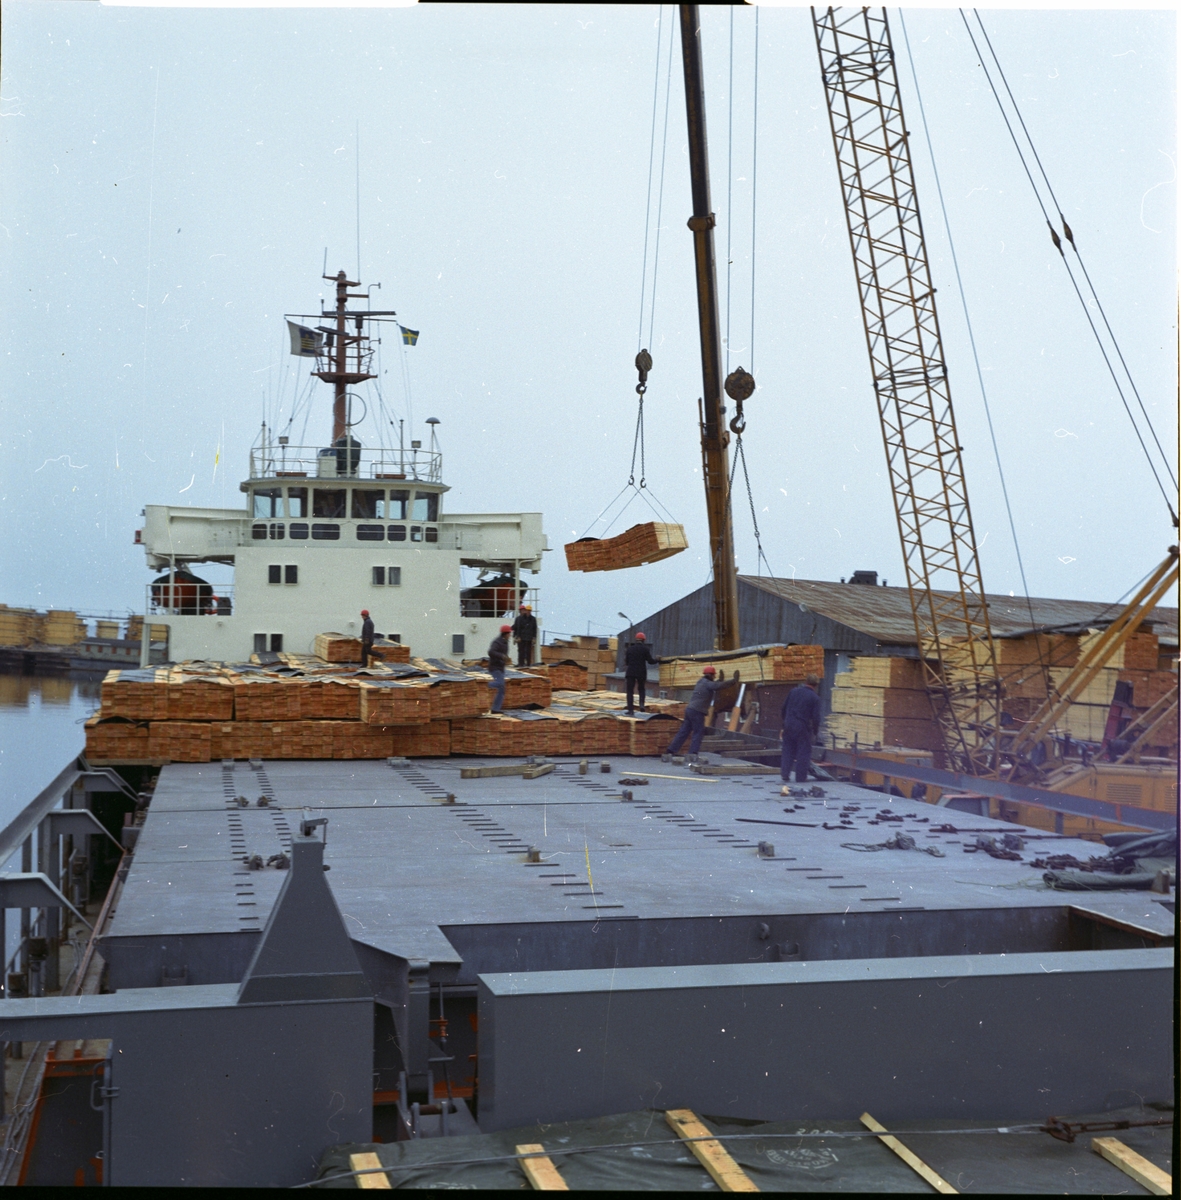 Lastning eller lossning av fartyg, april 1974
Scandinavian Continental Line AB

